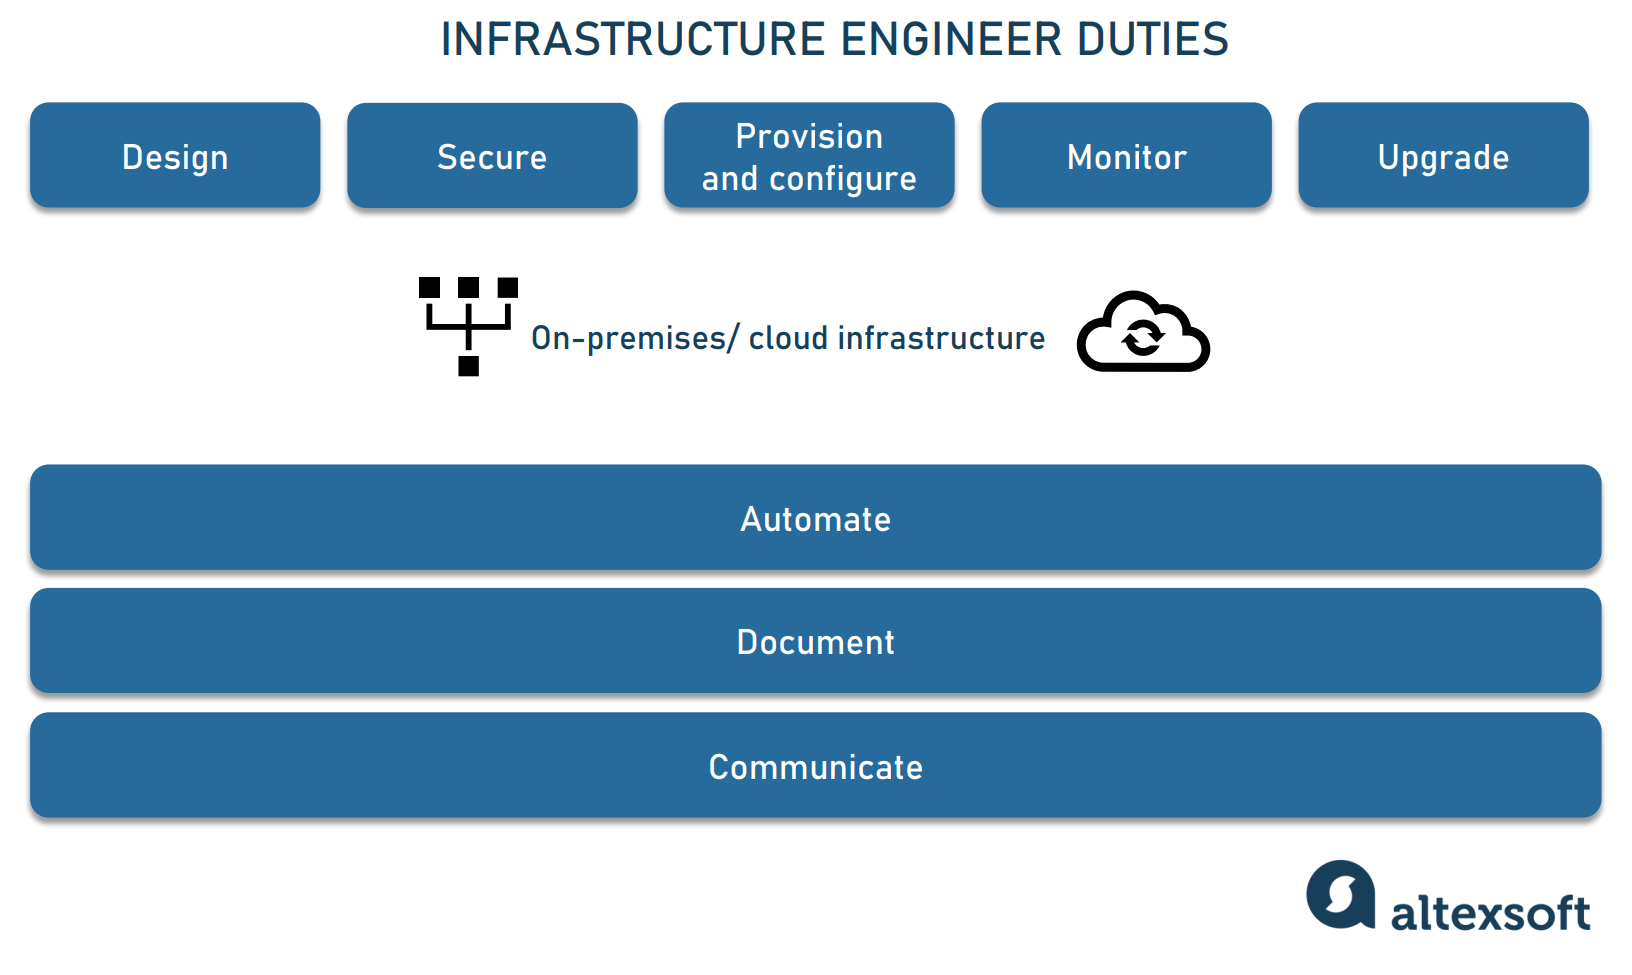 Infrastructure engineer duties